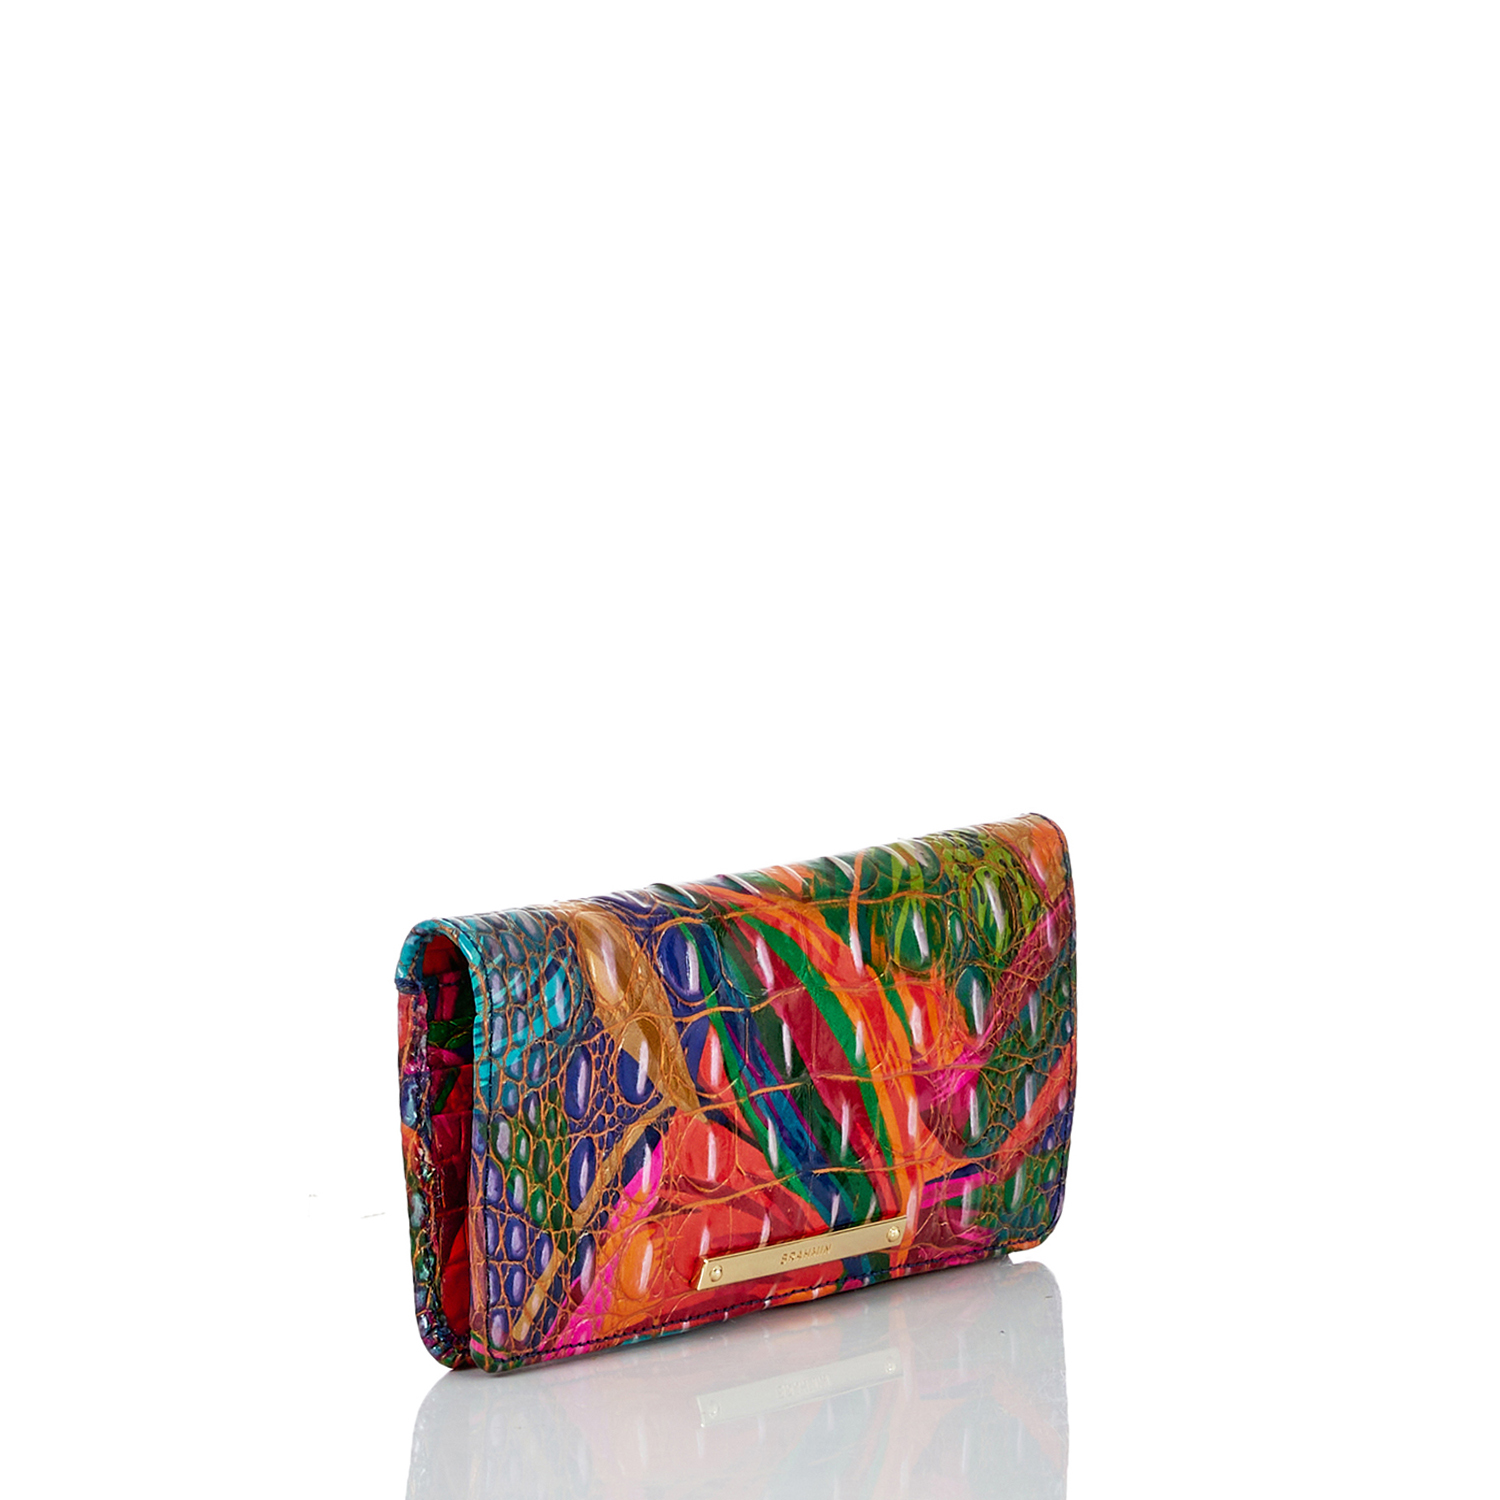 人気の商品セール Brahmin レディース 女性用 ファッション雑貨 小物 財布 Melbourne Ady Wallet Lush 